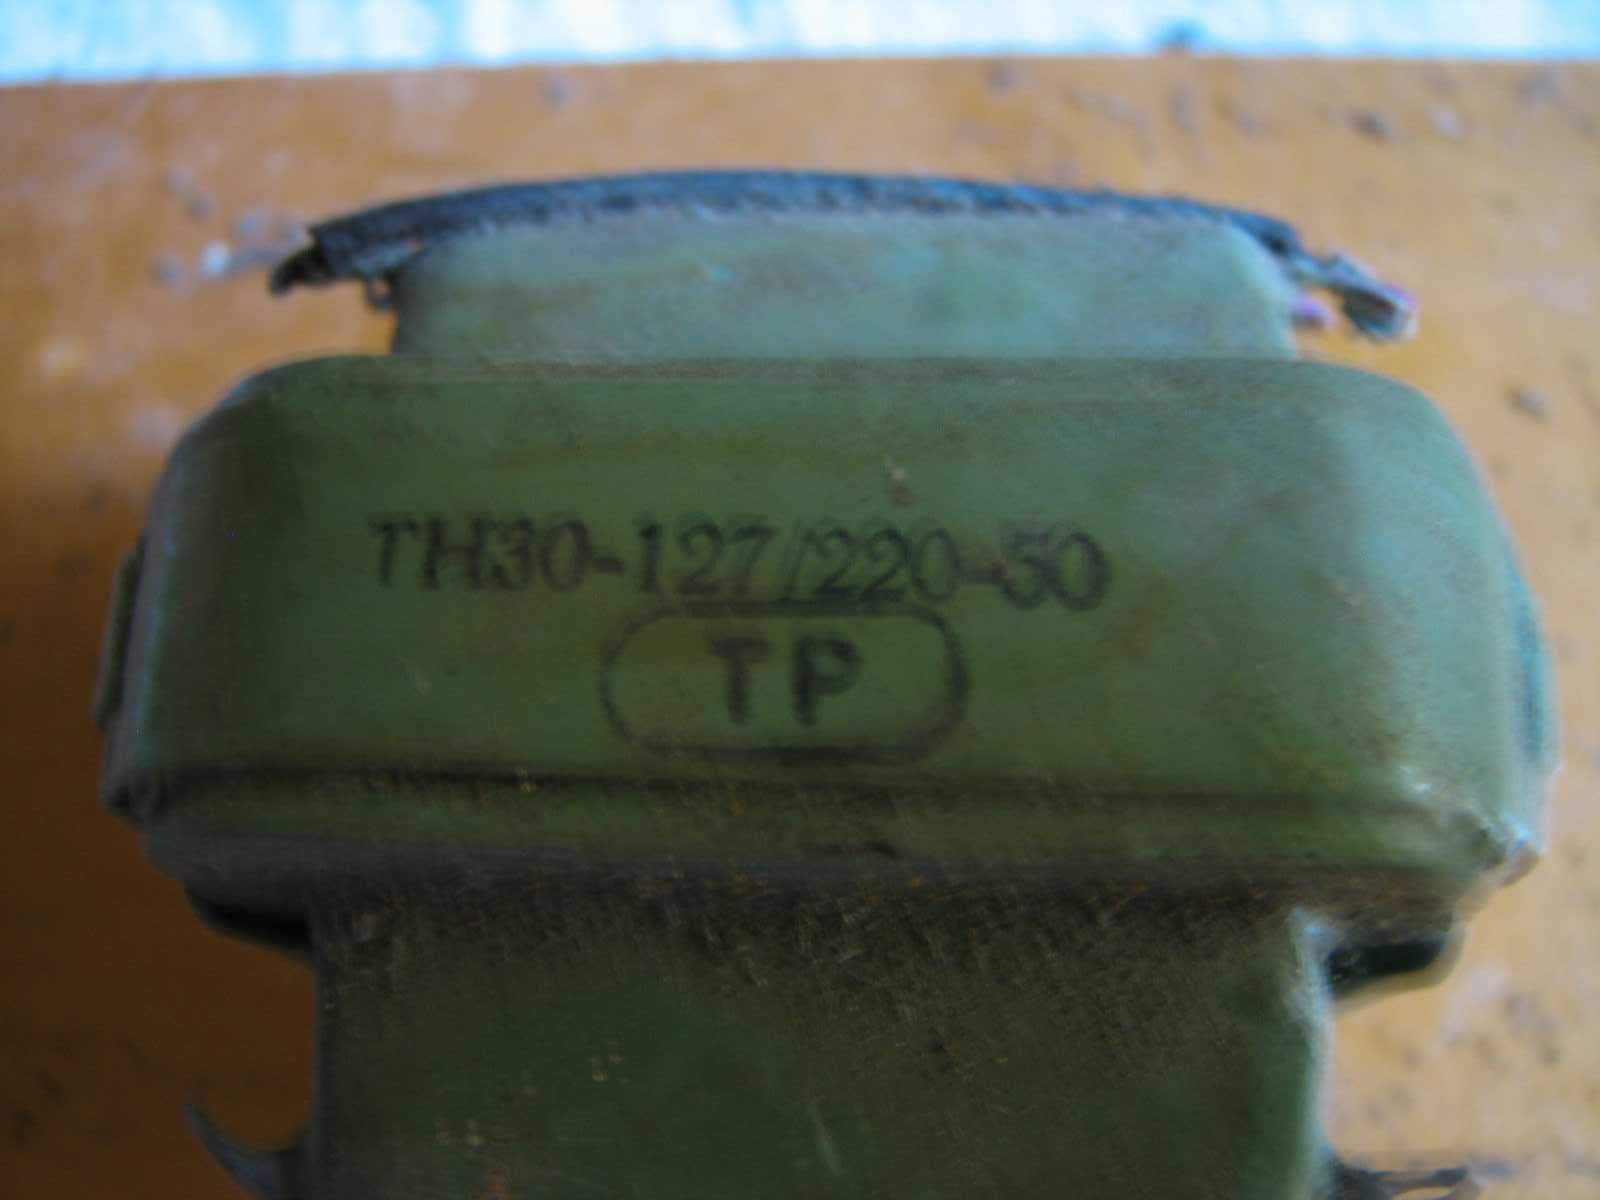 Трансформатор Торг щк 47 2 4037 ; твк110 ; ТН30-127.220-50